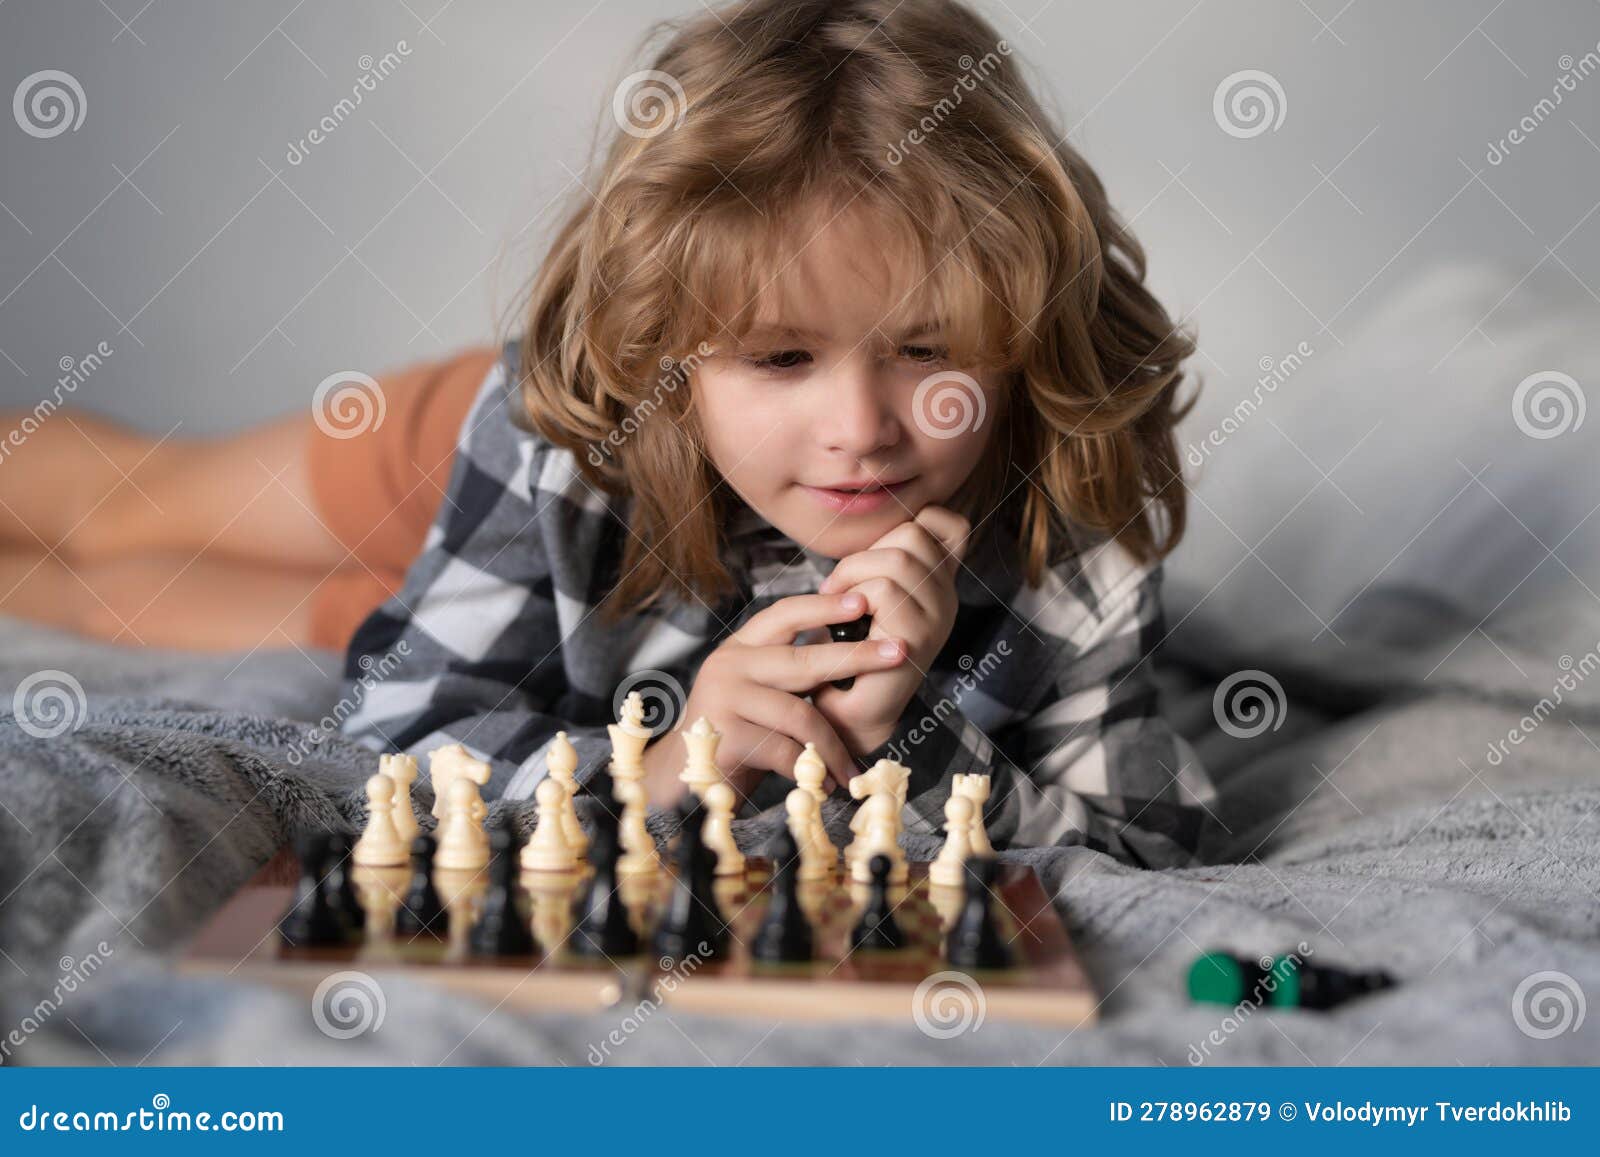 Esportes E Hobbies - Um Jogo De Xadrez Rápido. A Mão Da Criança